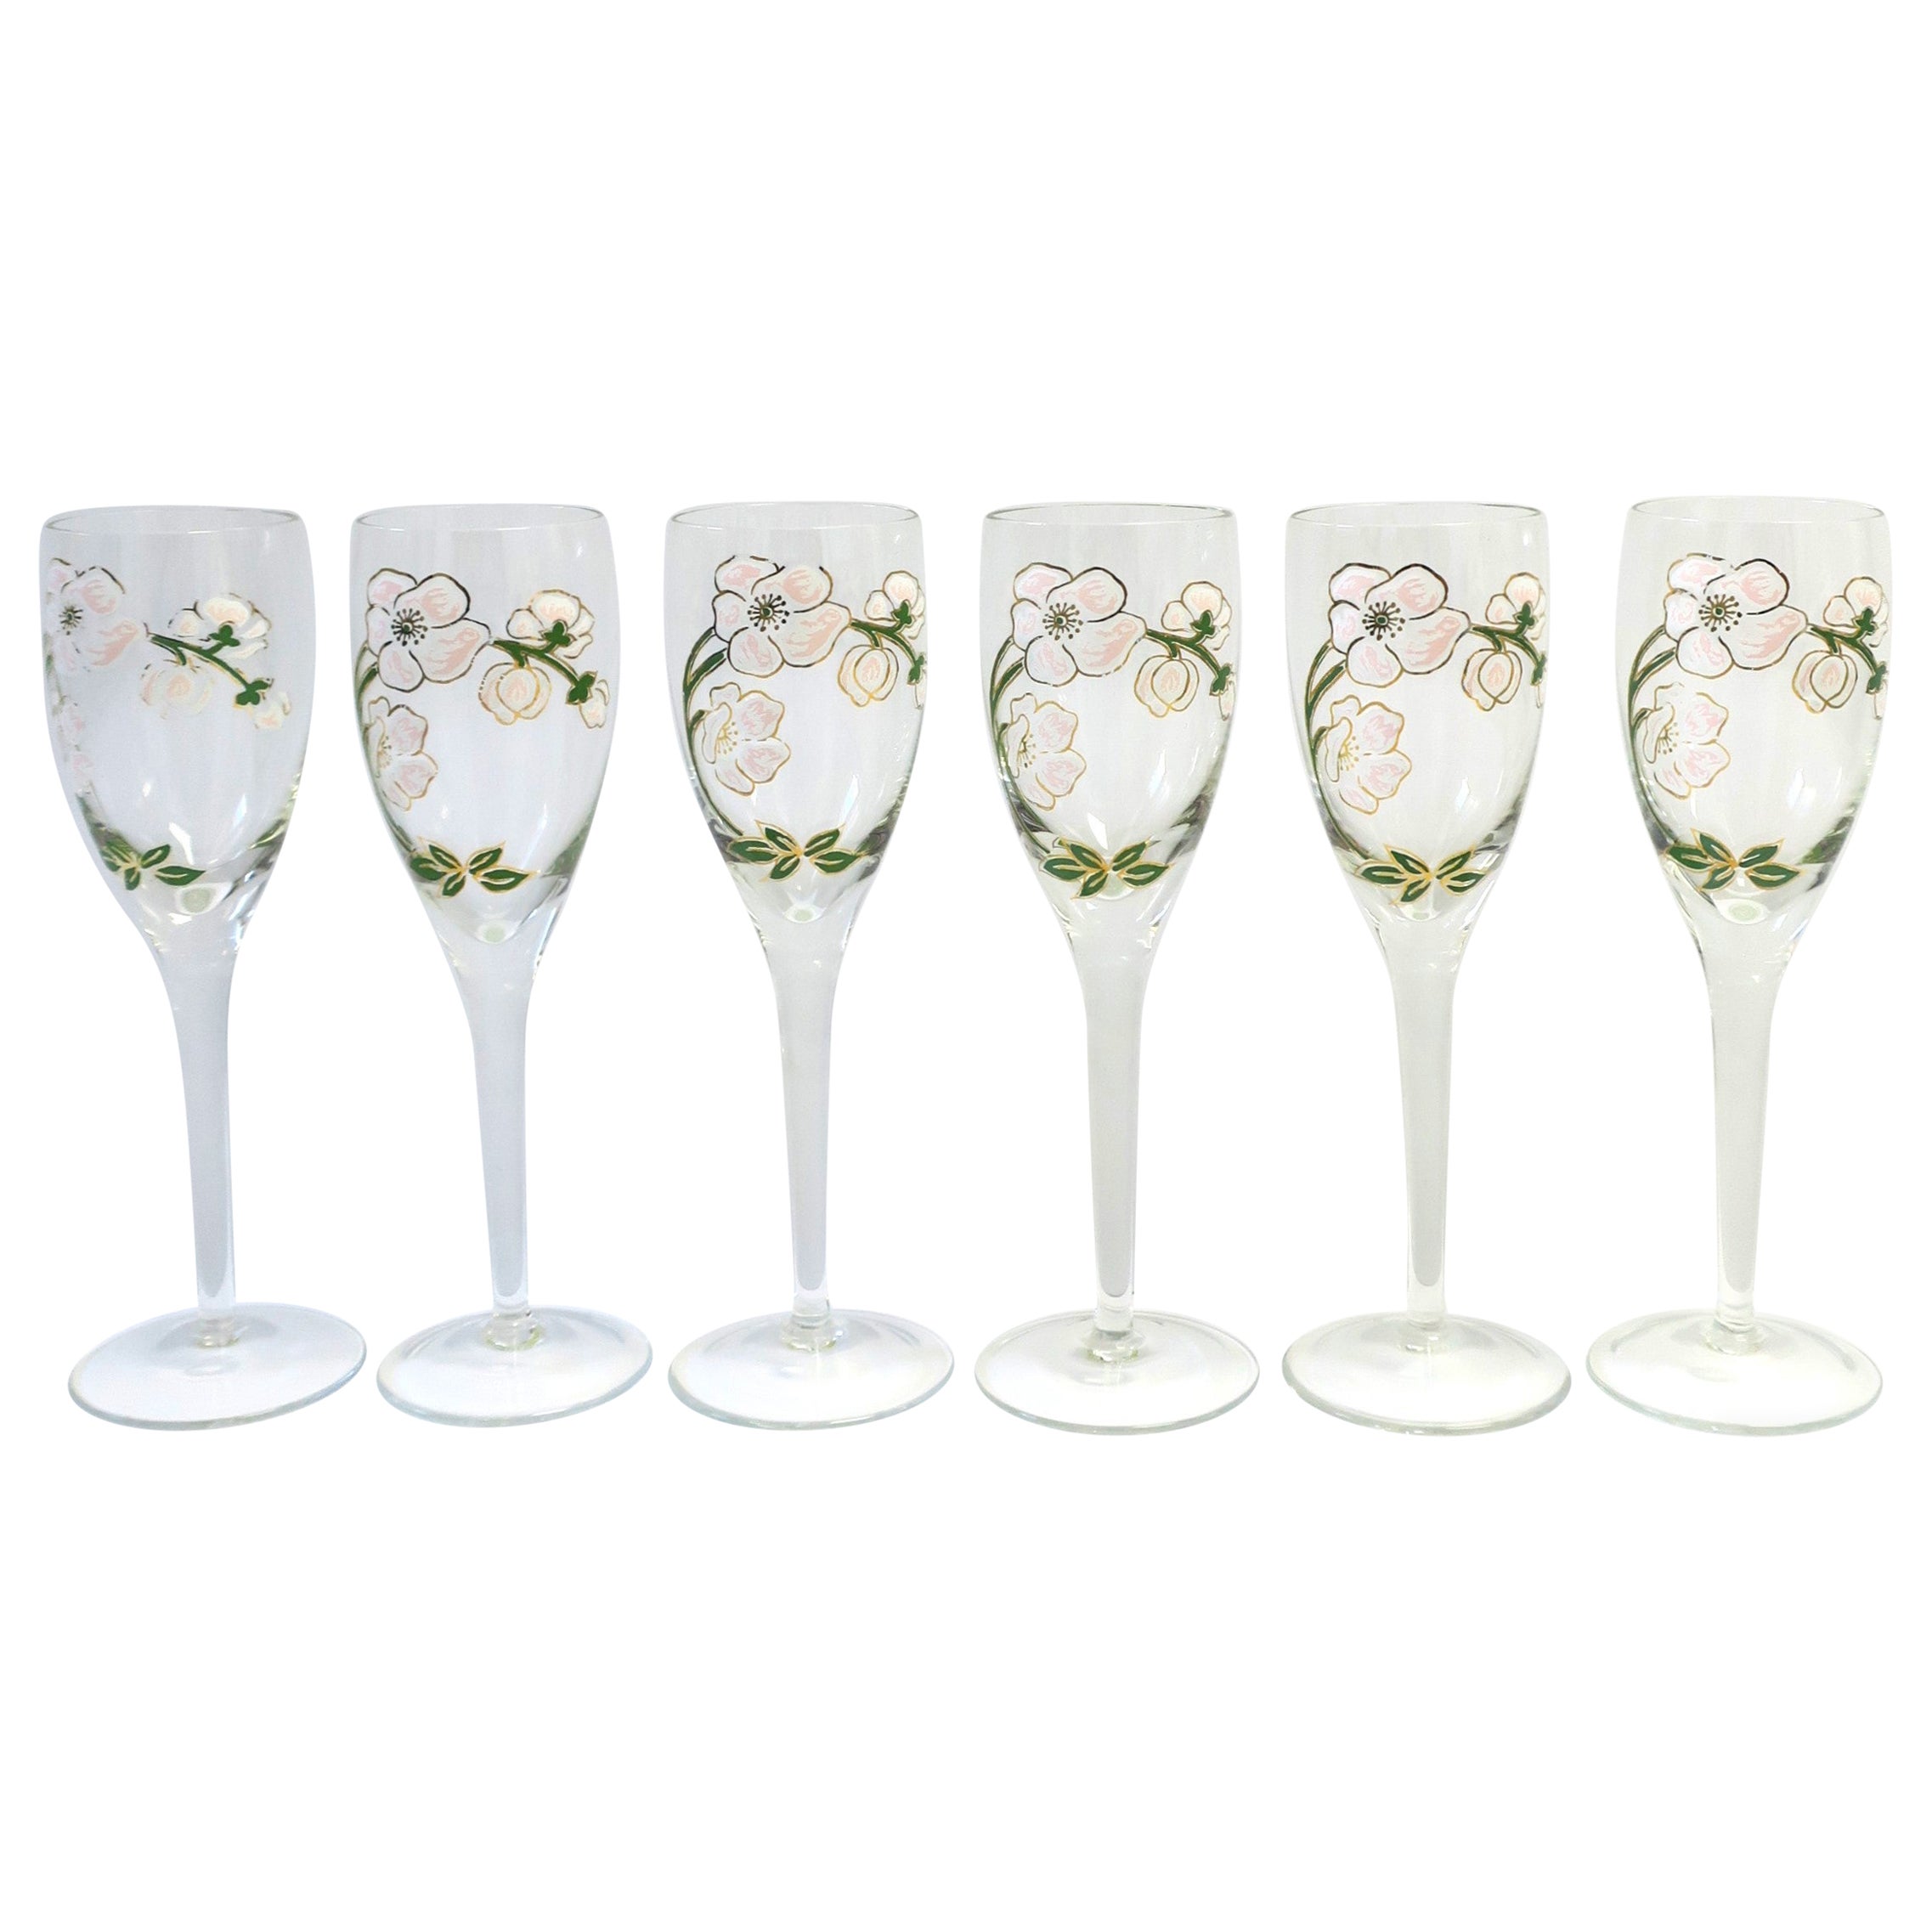 French Perrier-Jouet Champagne Flutes Glasses Art Nouveau, Set of 6